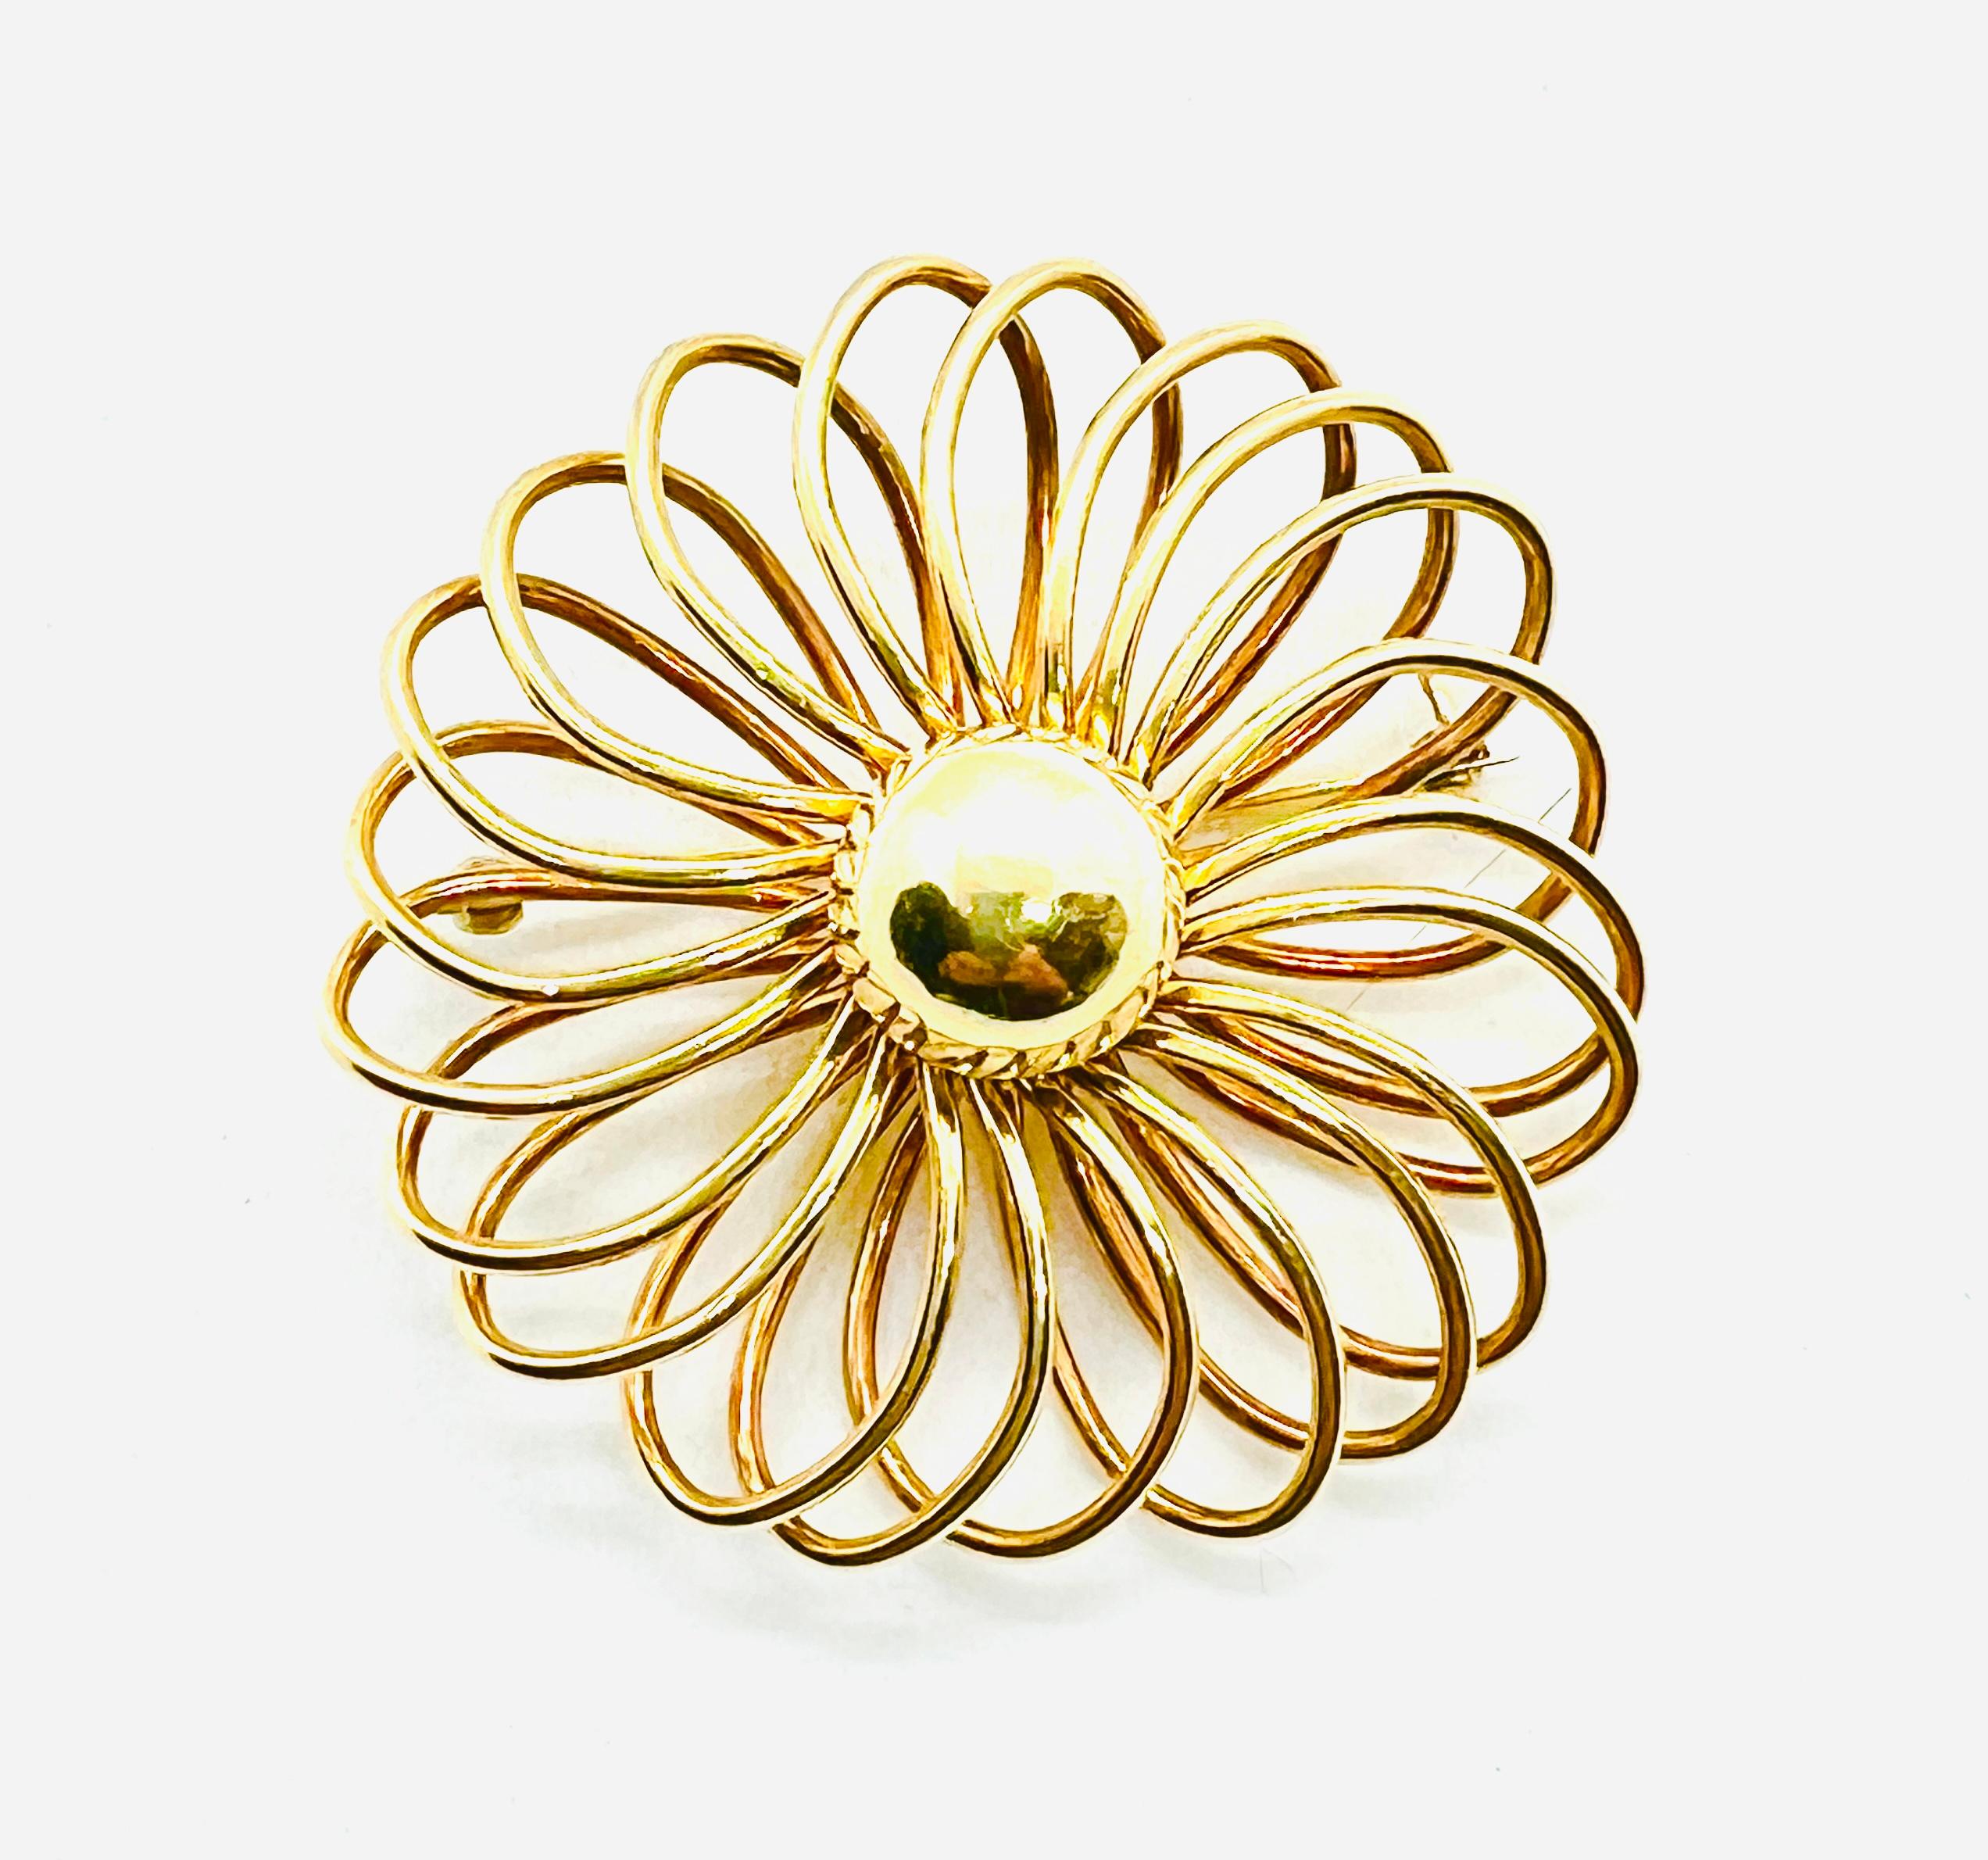 Wunderschöne Vintage Cartier Spiral Design Brosche. Er ist aus 14-karätigem Gelbgold gefertigt, misst 53 mm im Durchmesser und wiegt 22,8 g. Dieses von Blumen inspirierte Stück ist wunderschön und sehr leicht zu tragen. Auf der Rückseite gestempelt